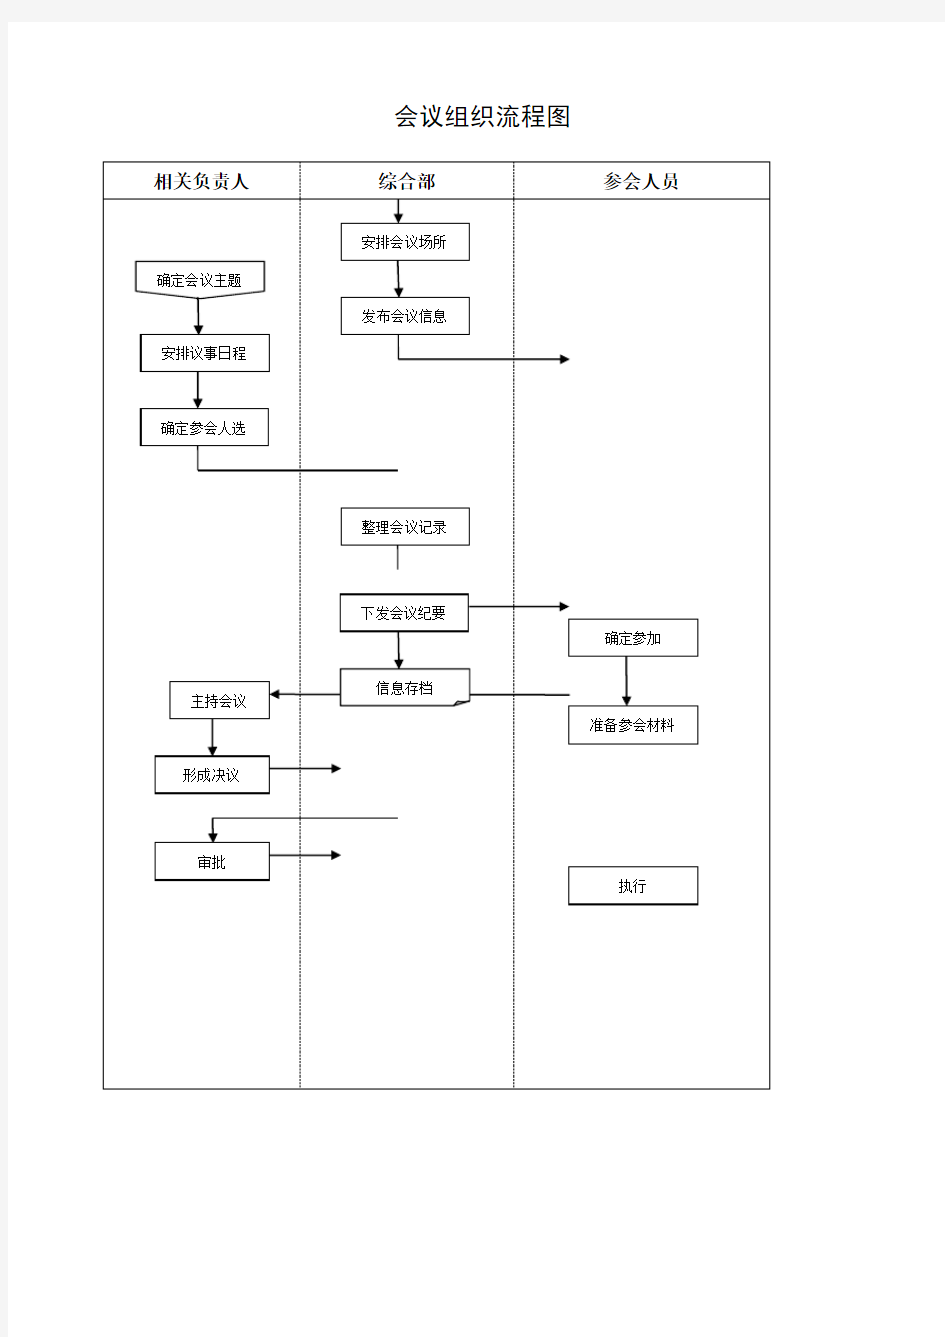 会议组织流程流程图